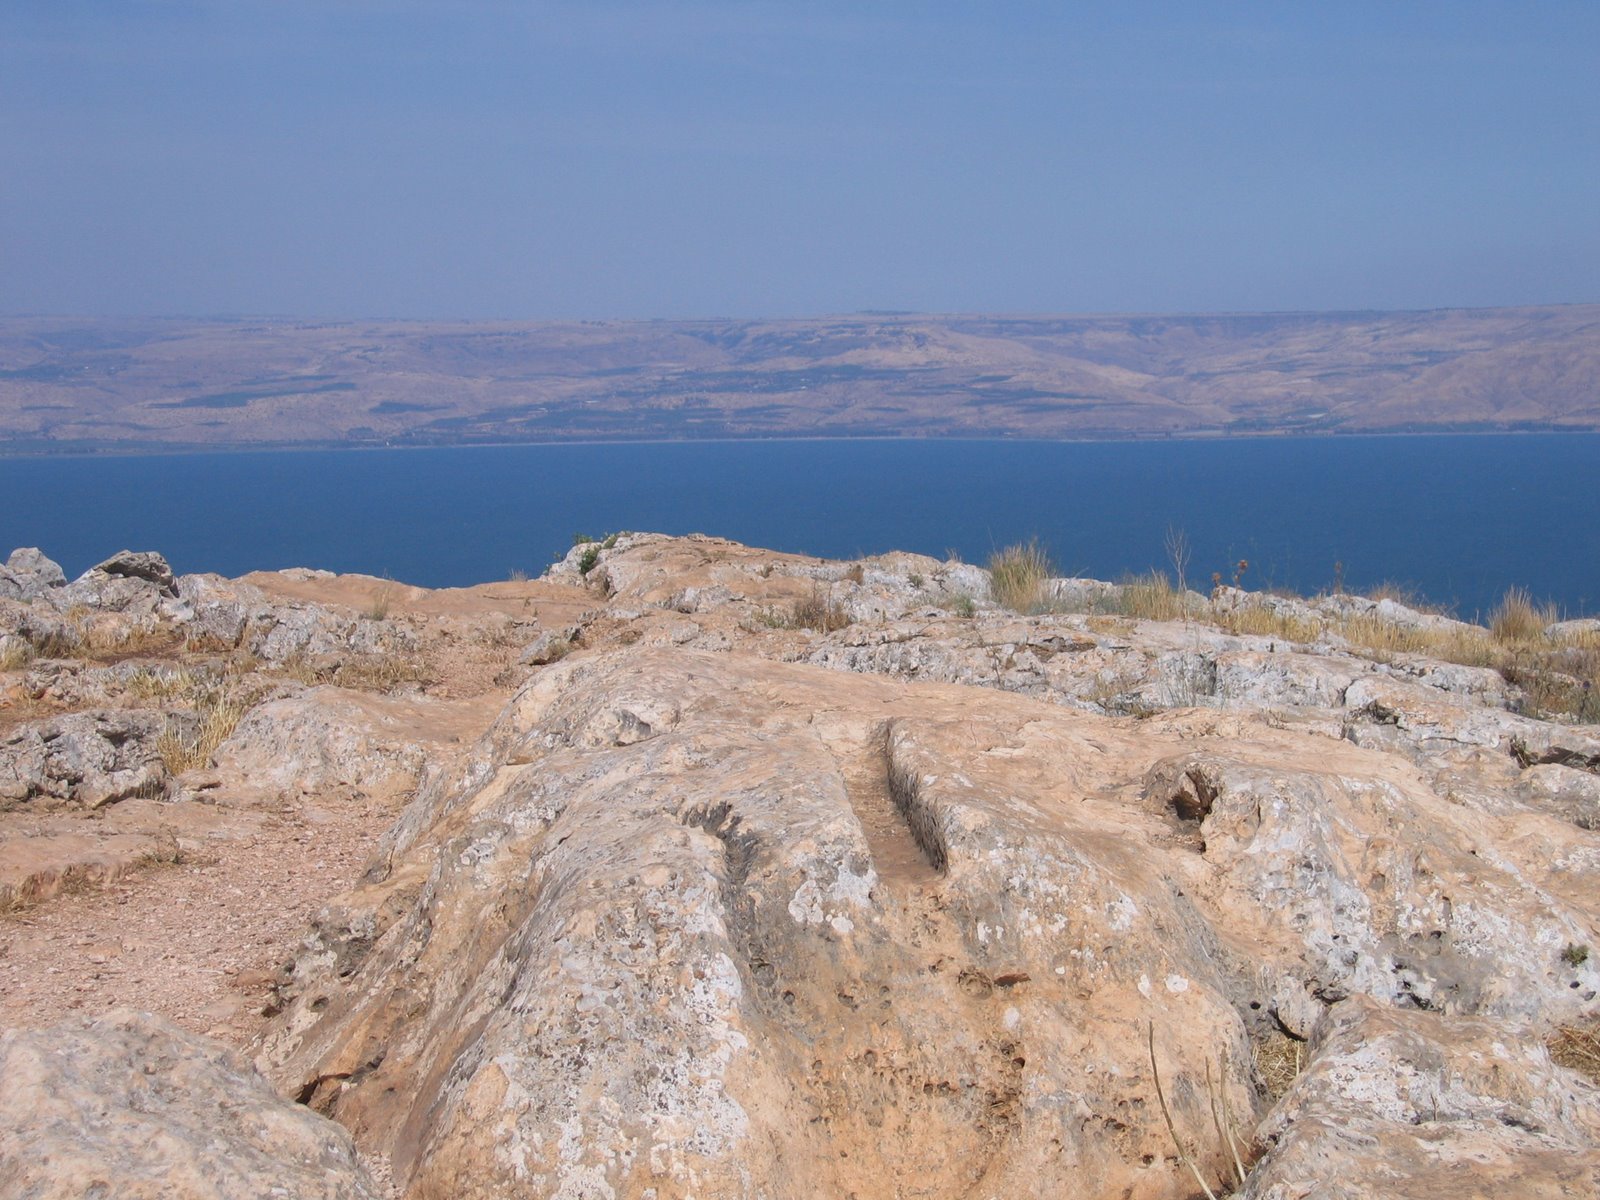 [Sea_of_Galilee_from_Mt_Arbel.jpg]